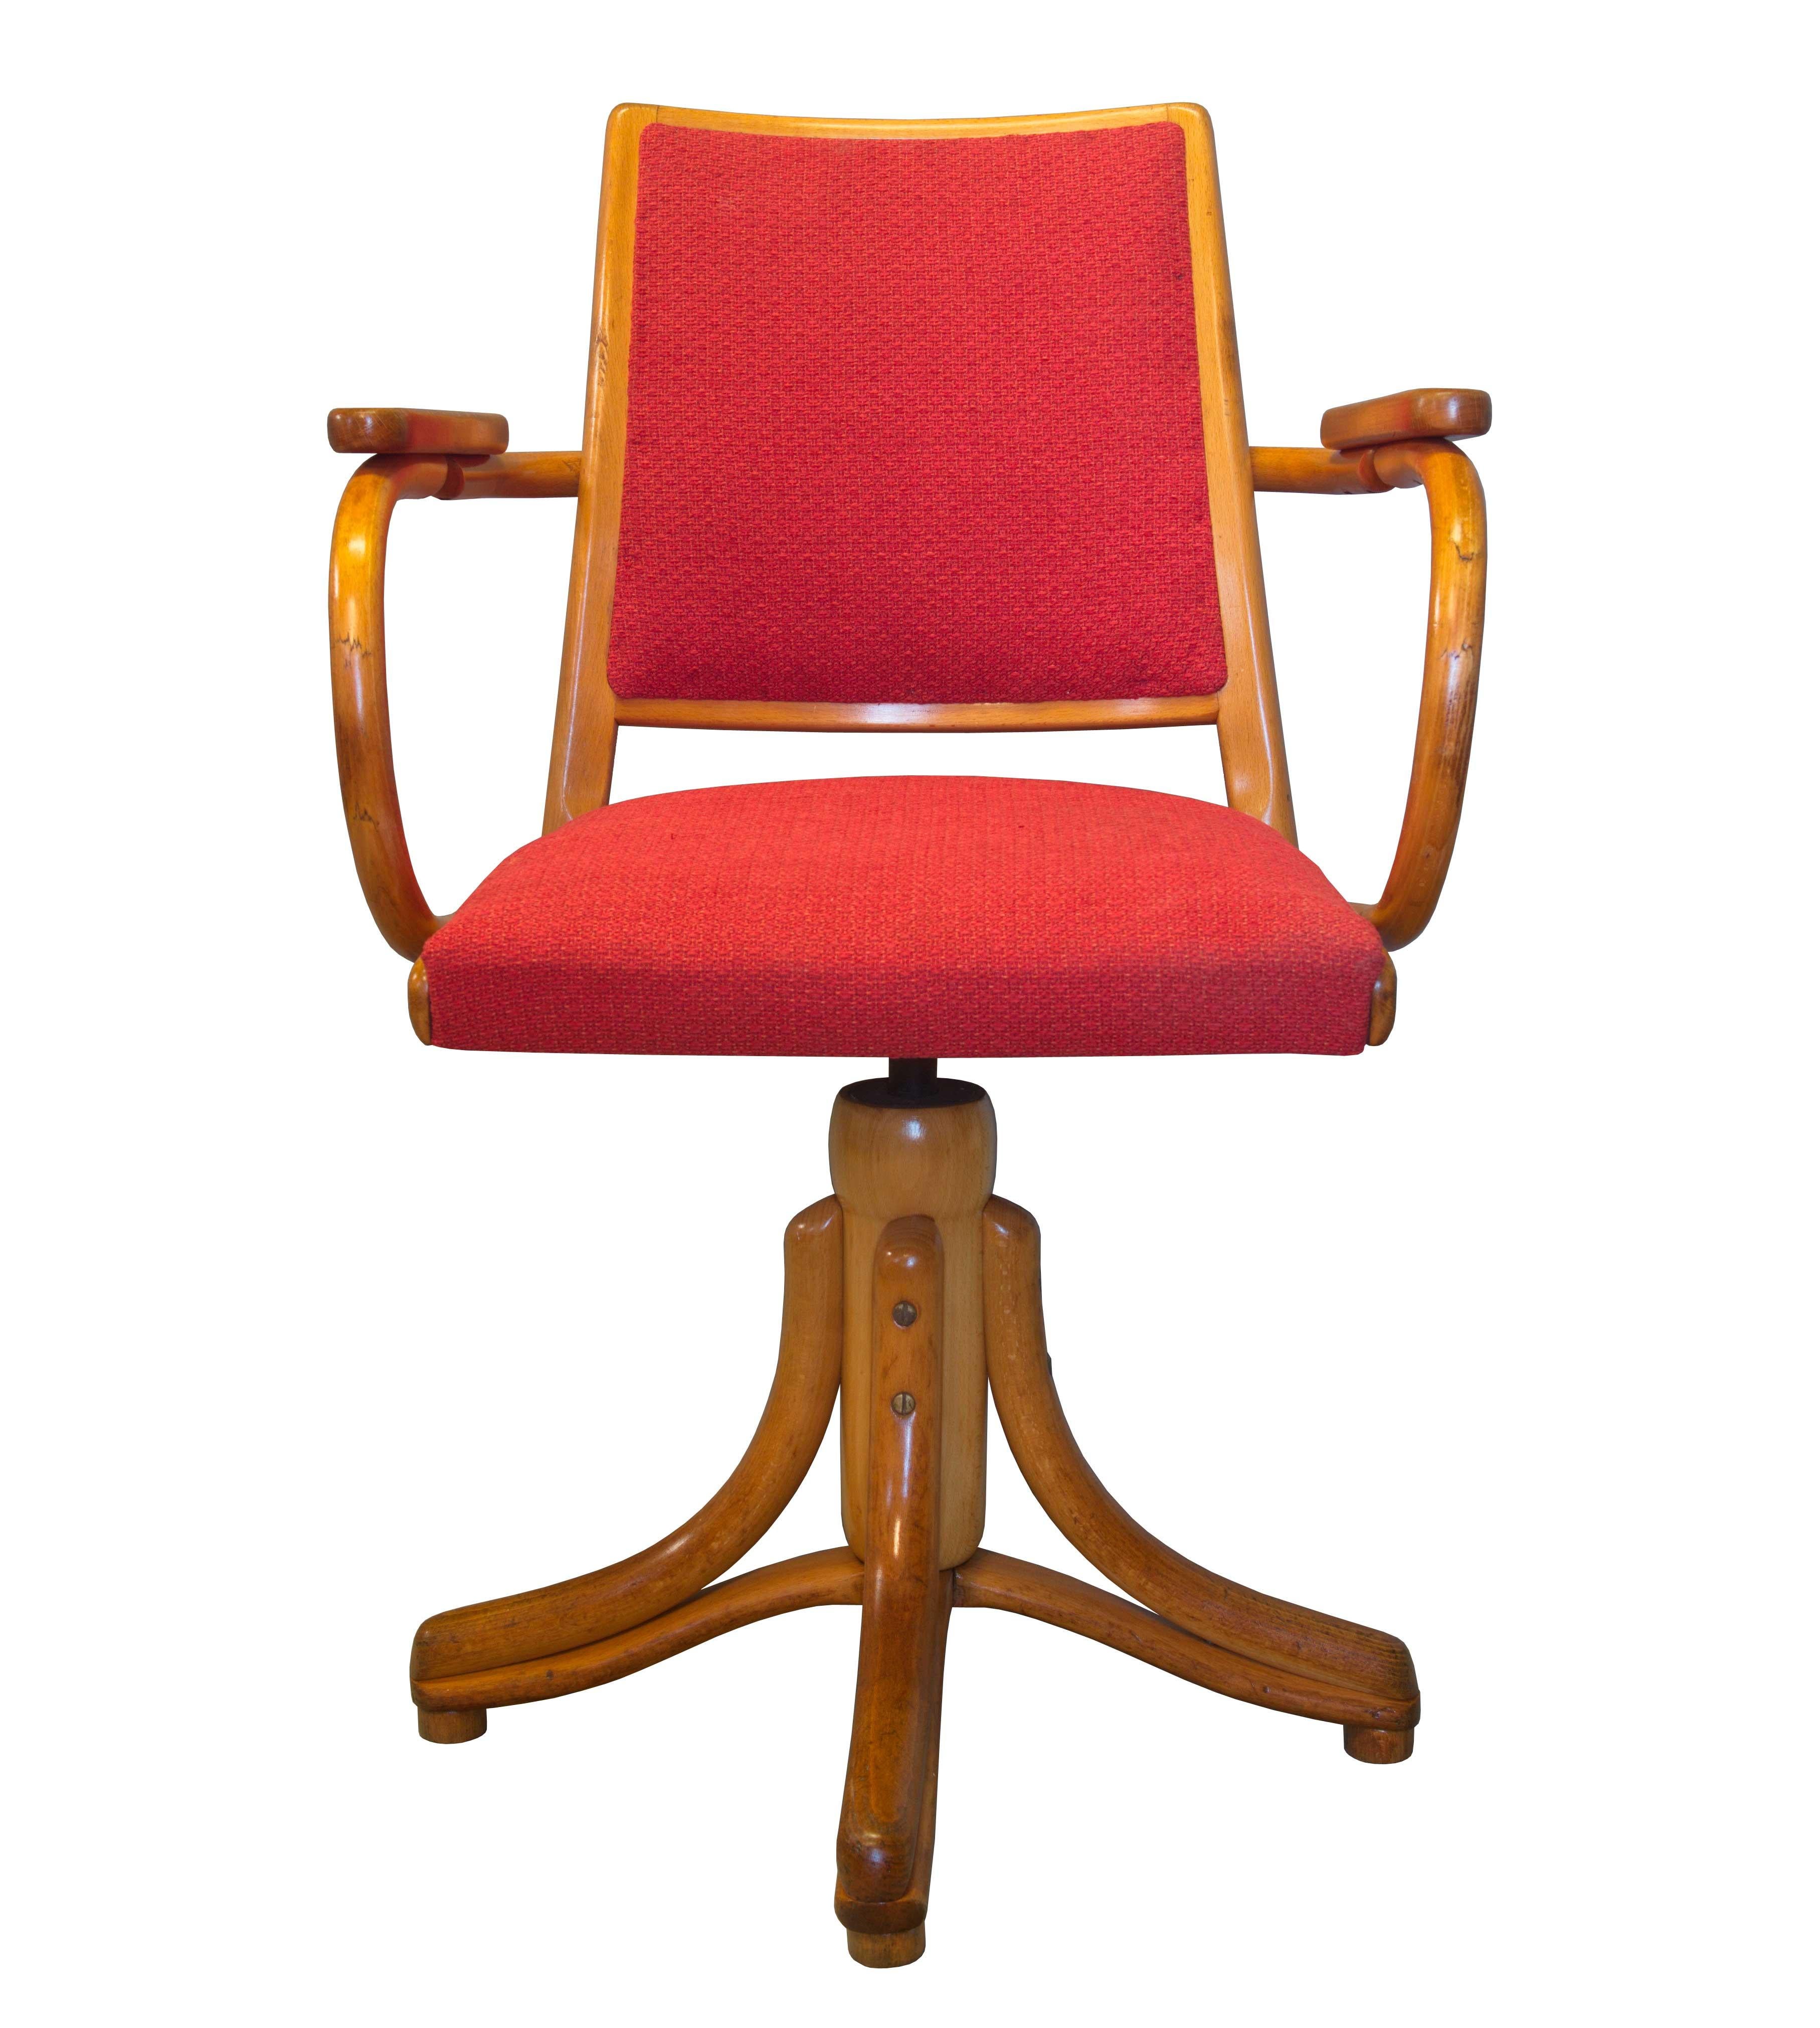 Elegant et intemporel, ce fauteuil pivotant a été conçu et produit dans les années 1950 par la société TON en Tchécoslovaquie. Elle porte cependant les marques du Label Ligna, visibles sur le dessous de l'assise de la chaise. Ligna était la société